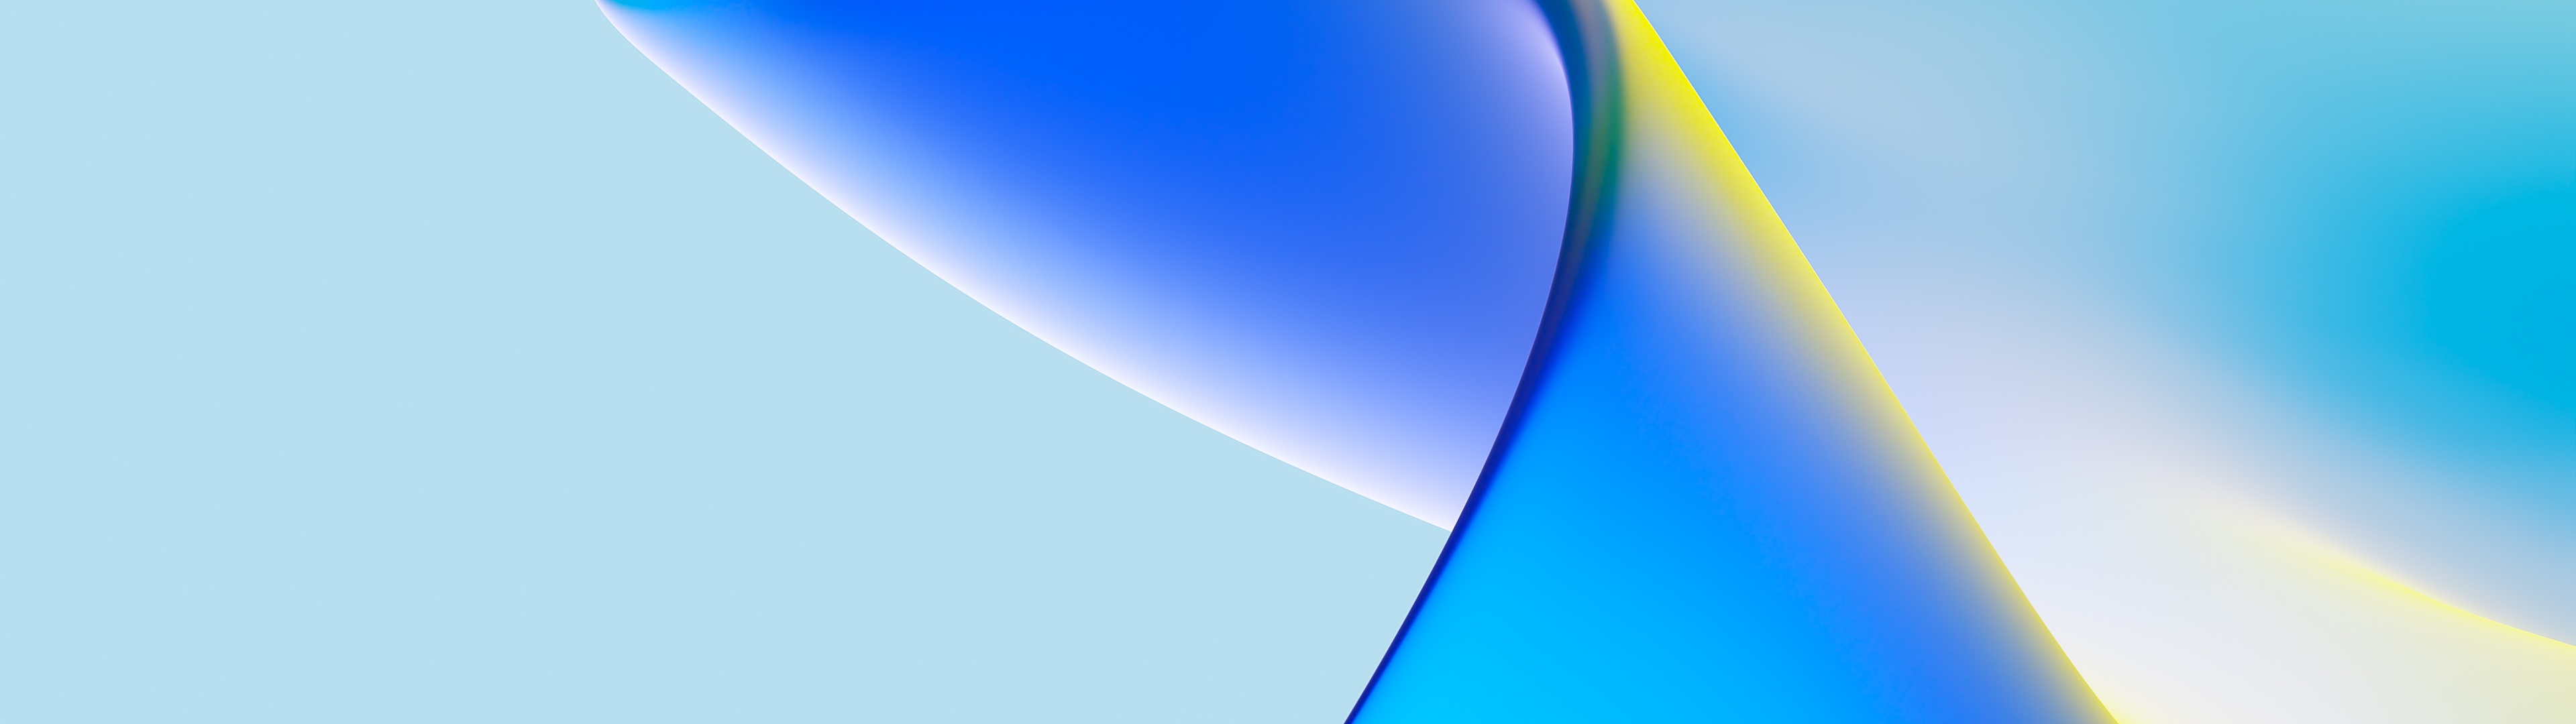 #8985 Hình nền xanh dương độ chuyển tiếp là một hình nền trừu tượng rất đặc biệt và chất lượng 4K. Với hiệu ứng chuyển động độc đáo và màu xanh dương rực rỡ, hình nền này sẽ khiến cho màn hình của bạn trở nên thật nổi bật và đầy sức sống.